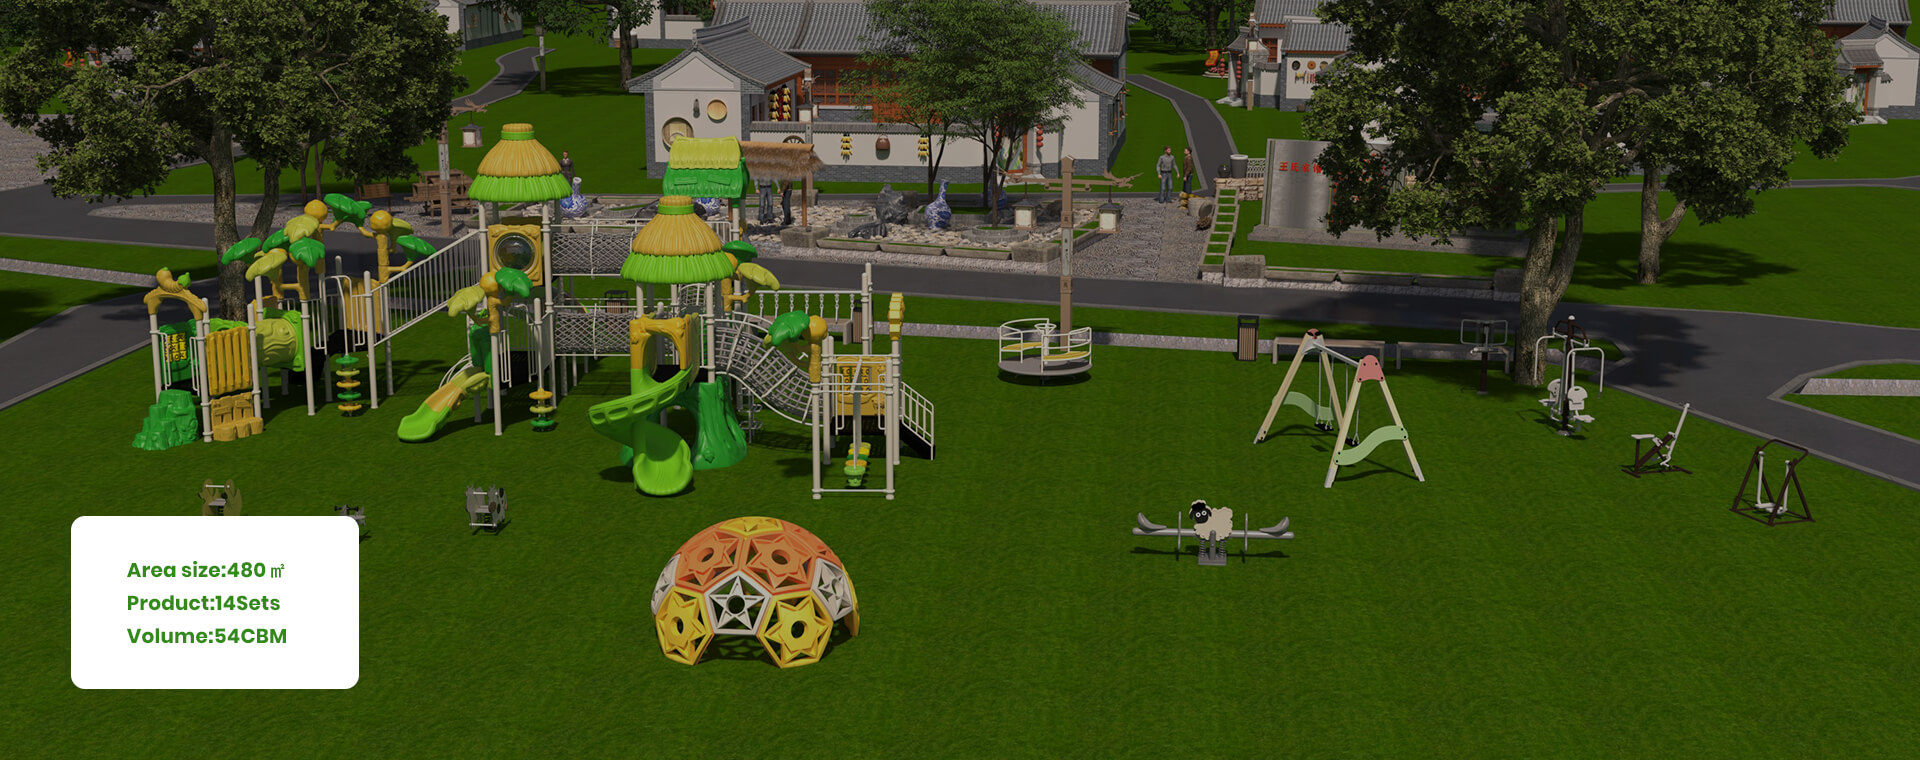 Village-Playground.jpg